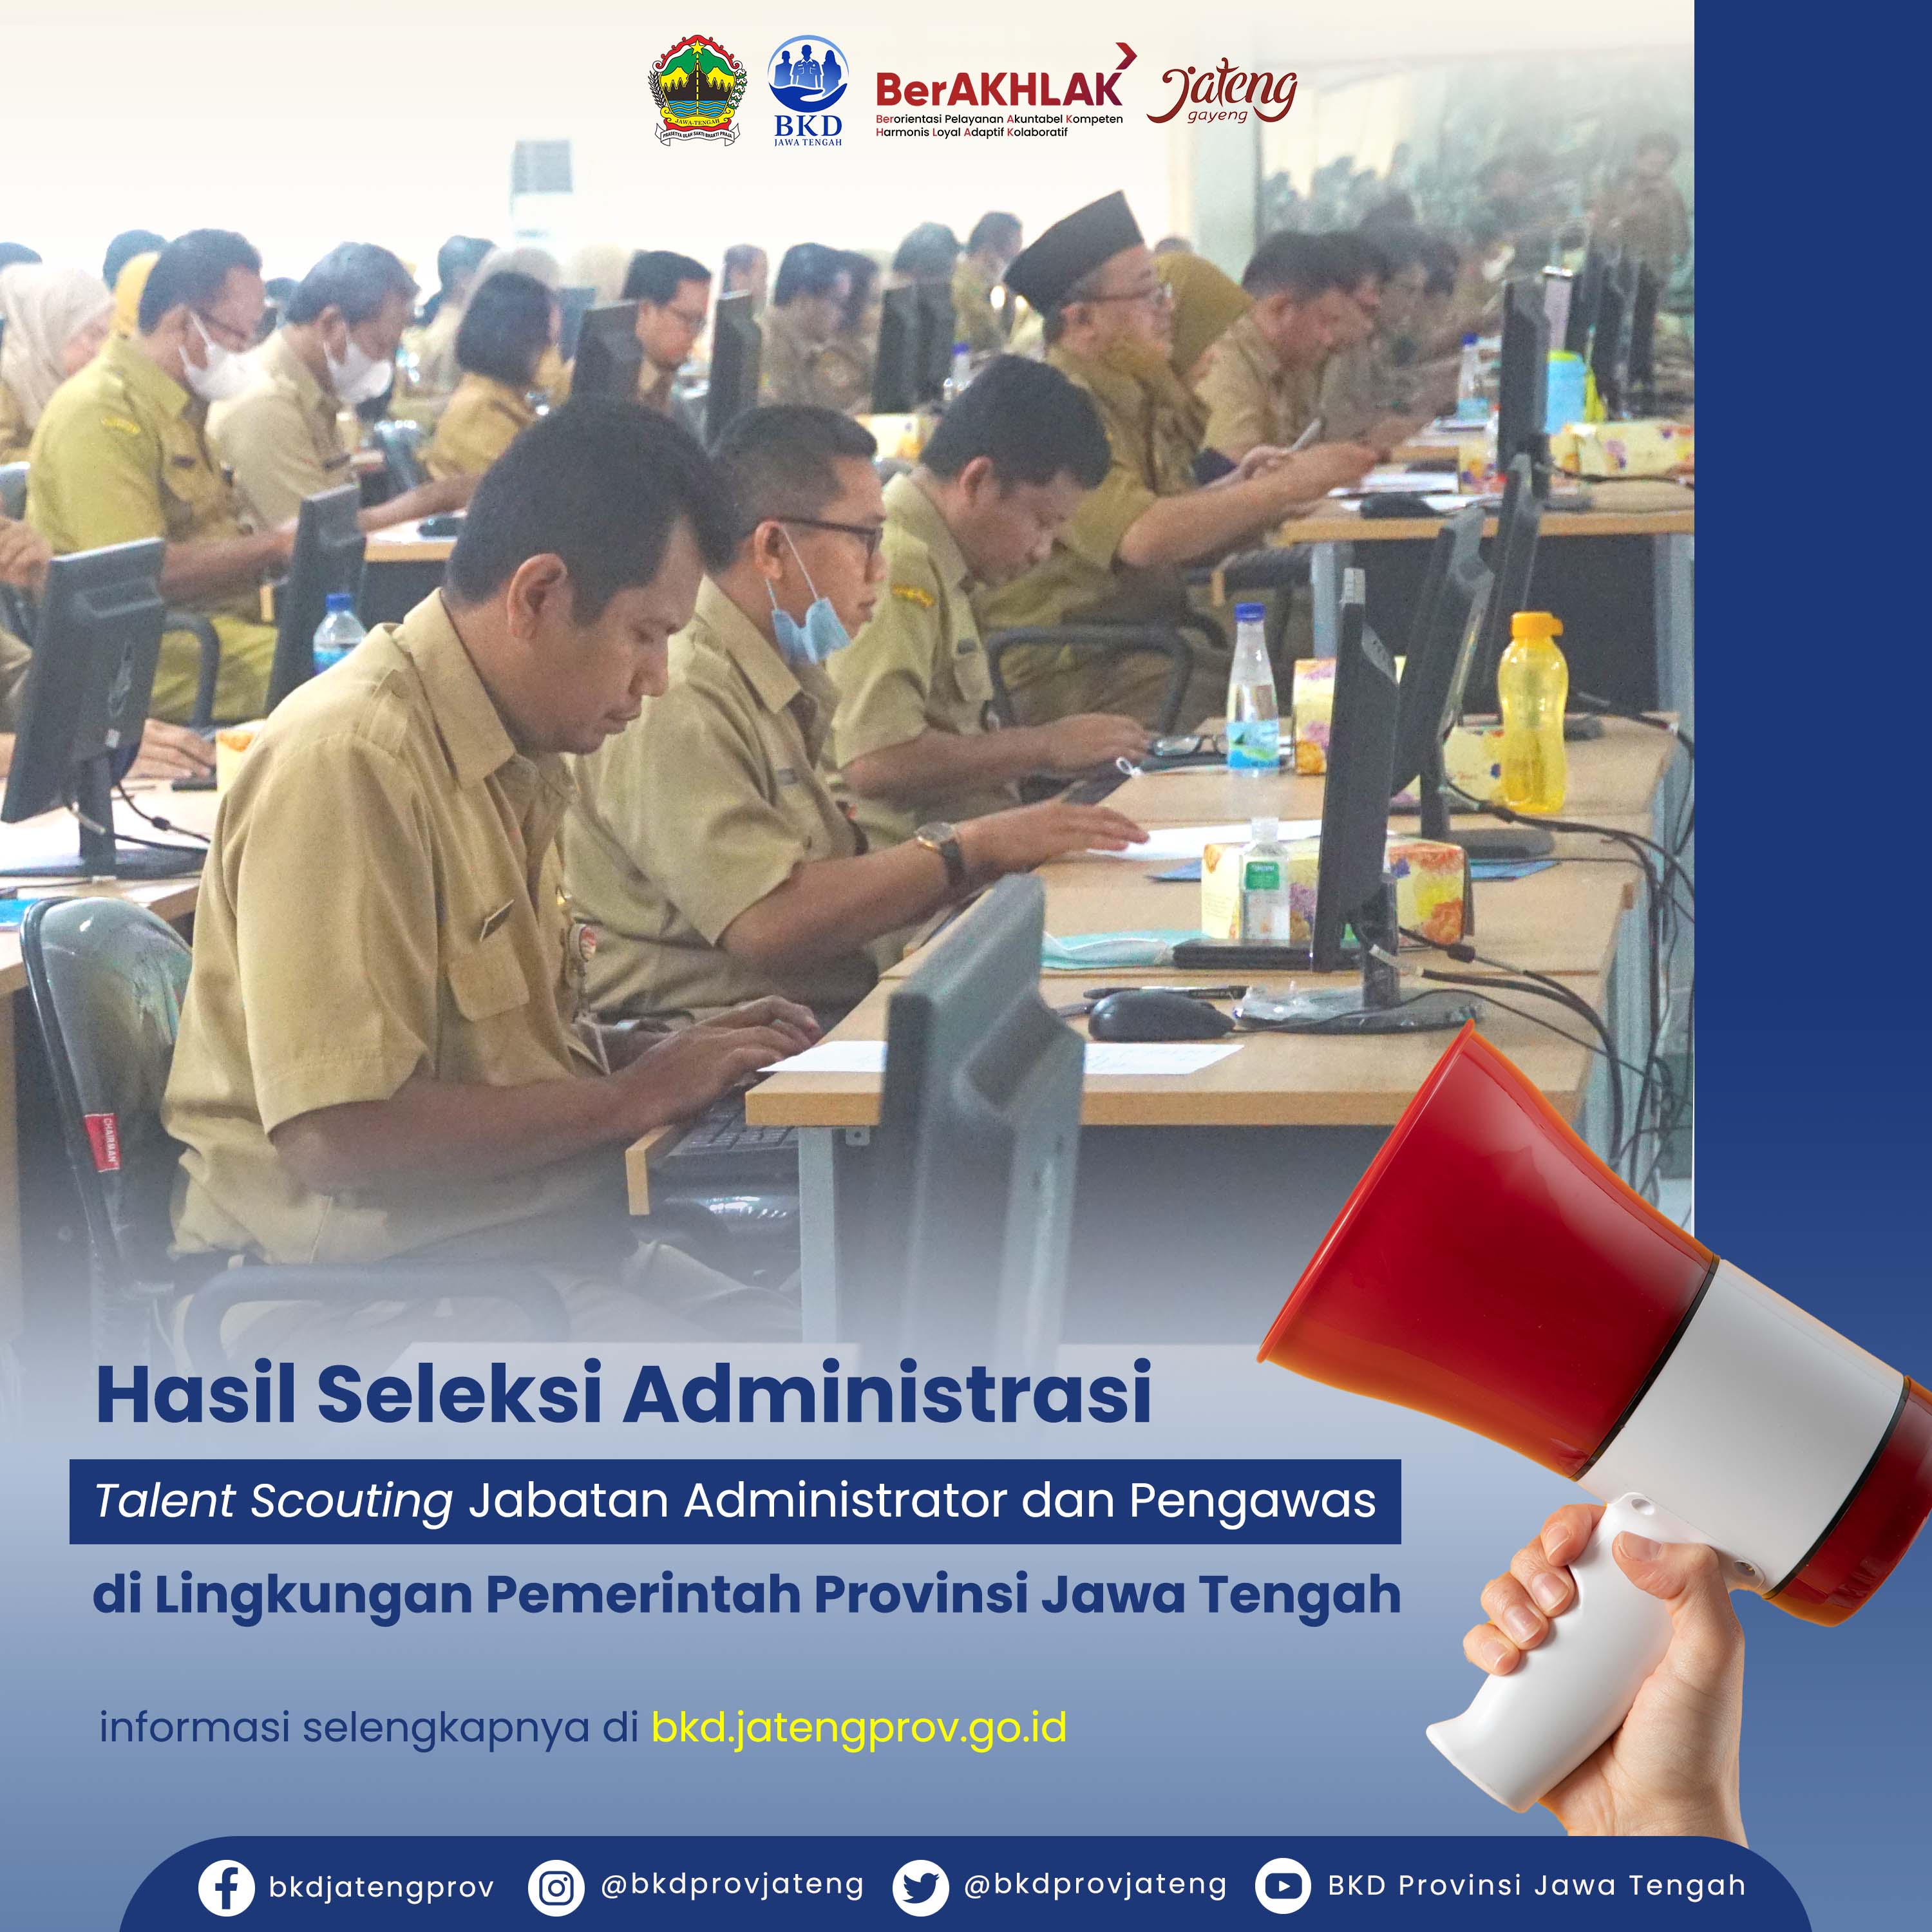  Pelaksanaan dan Penyampaian Daftar Nominatif Calon Peserta Talent Scouting Jabatan Administrator (Eselon III) dan Jabatan Pengawas (Eselon IV) di Lingkungan Pemerintah Provinsi Jawa Tengah